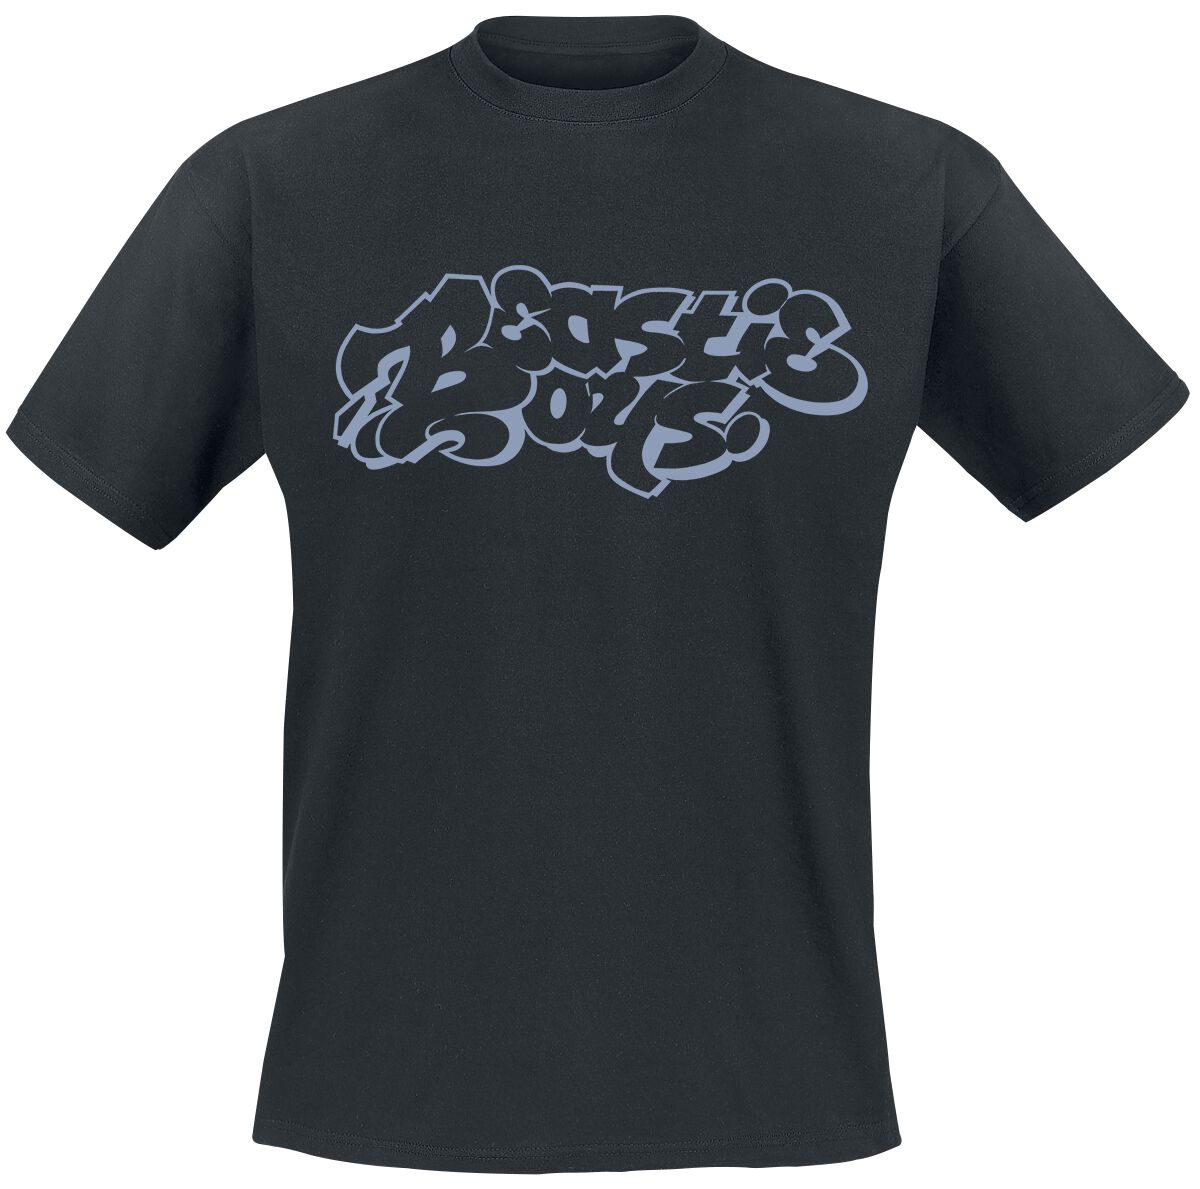 Beastie Boys T-Shirt - Graffiti Logo - S bis XXL - für Männer - Größe XXL - schwarz  - Lizenziertes Merchandise!